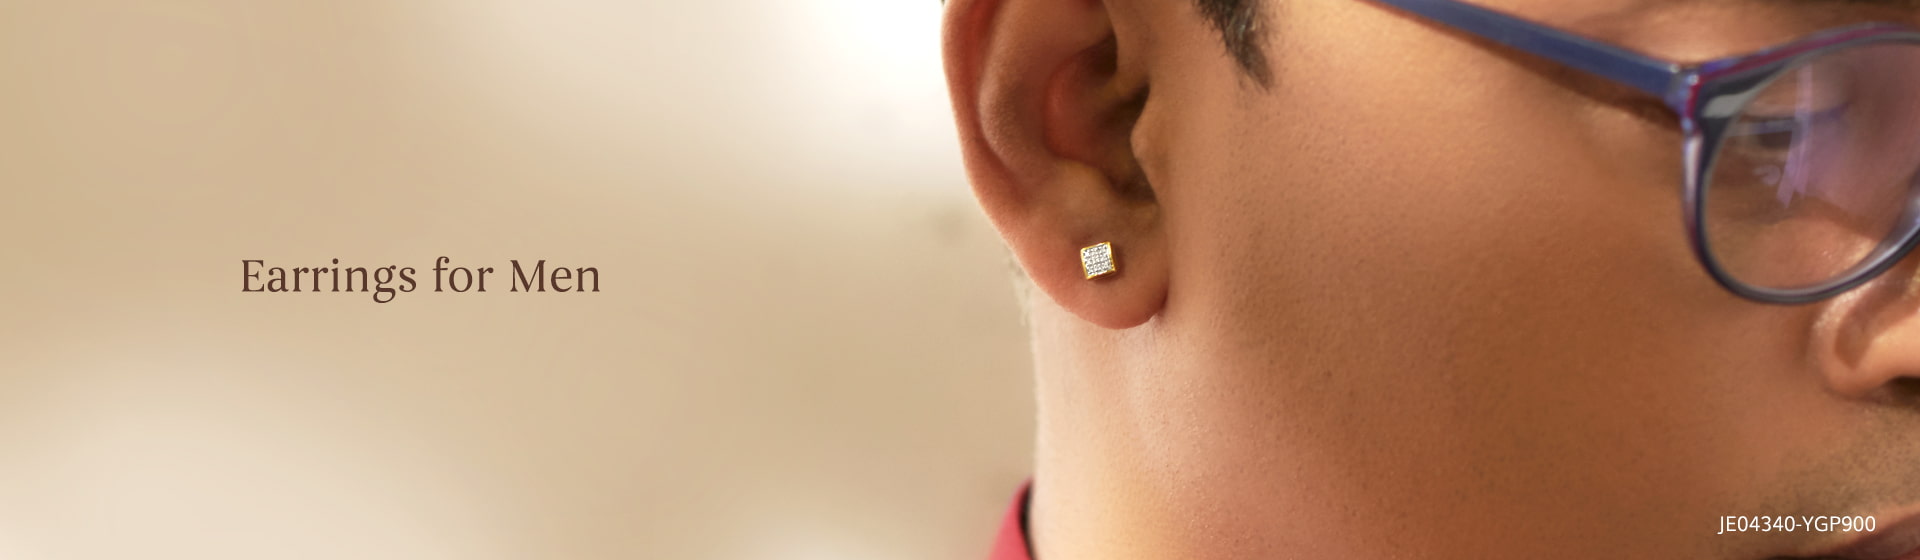 Stylish Gold & Diamond Earring Designs For Men